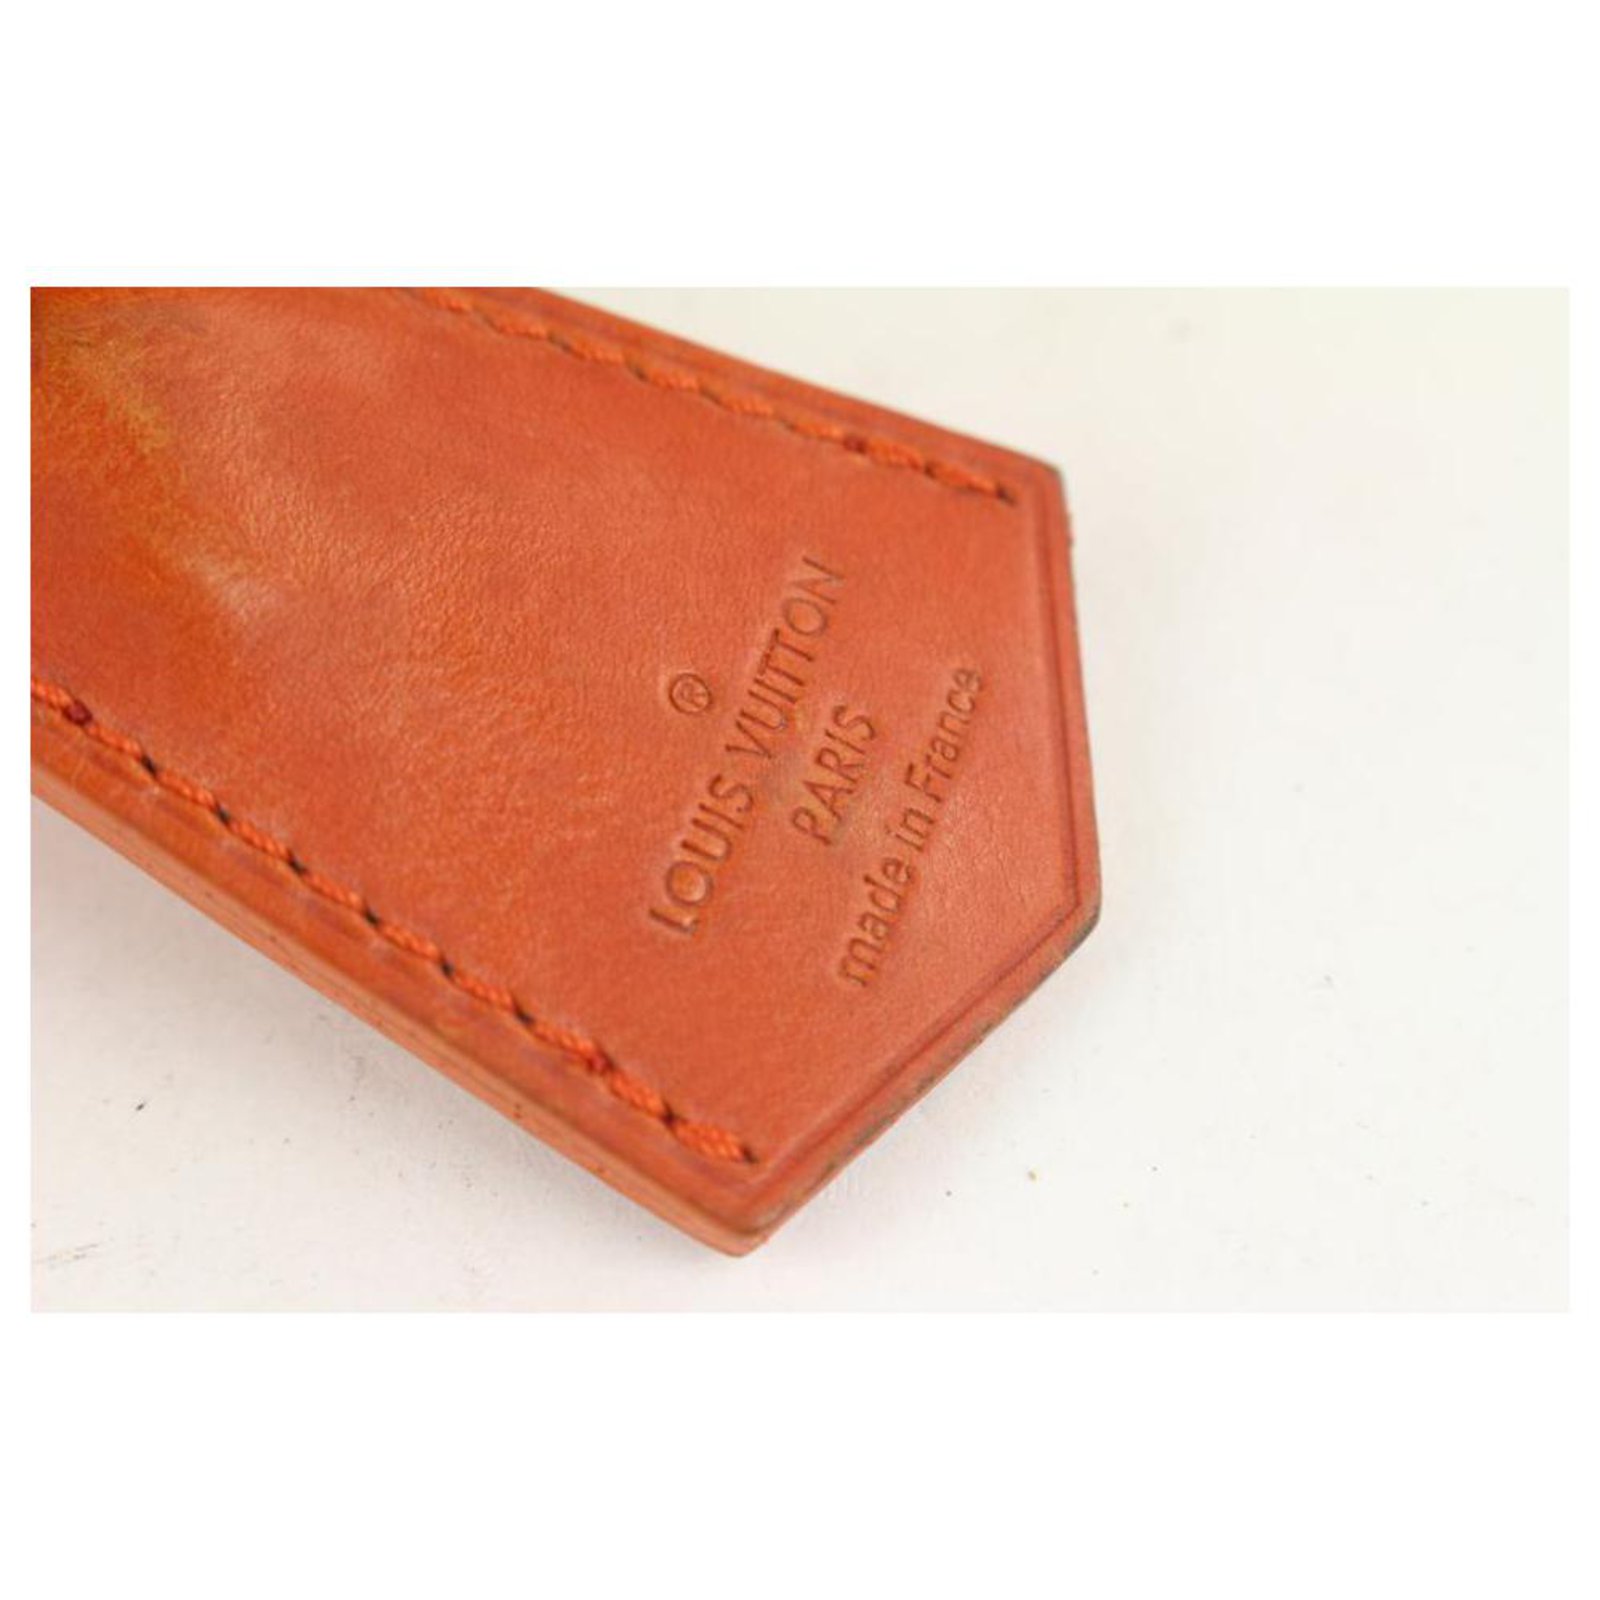 Louis Vuitton Richard Prince Red Jaune Denim Monogram Pulp Weekender PM Bag  571lv614